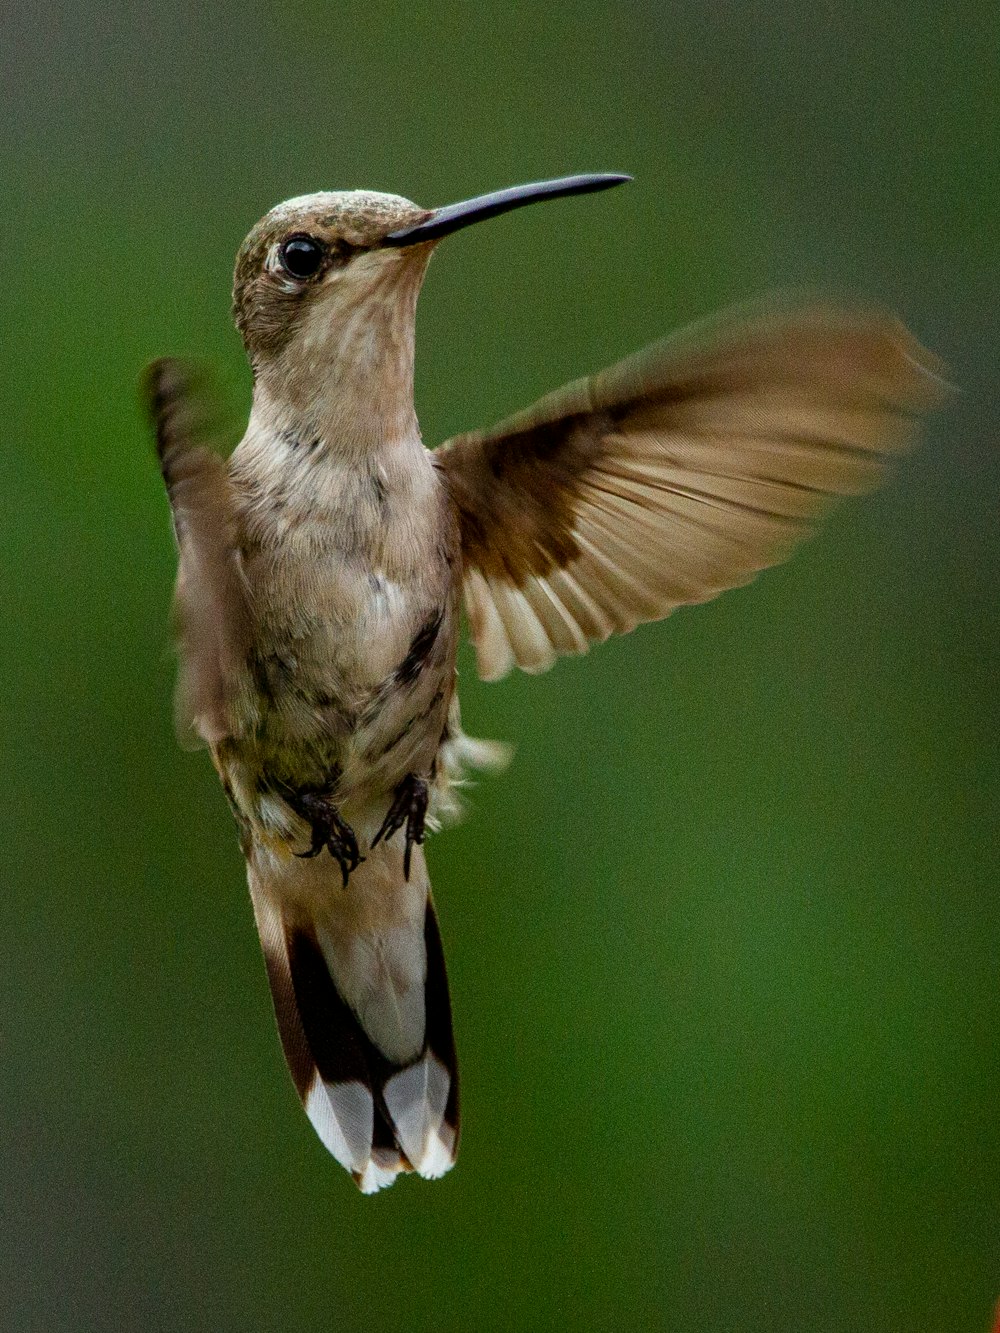 um beija-flor batendo as asas no ar